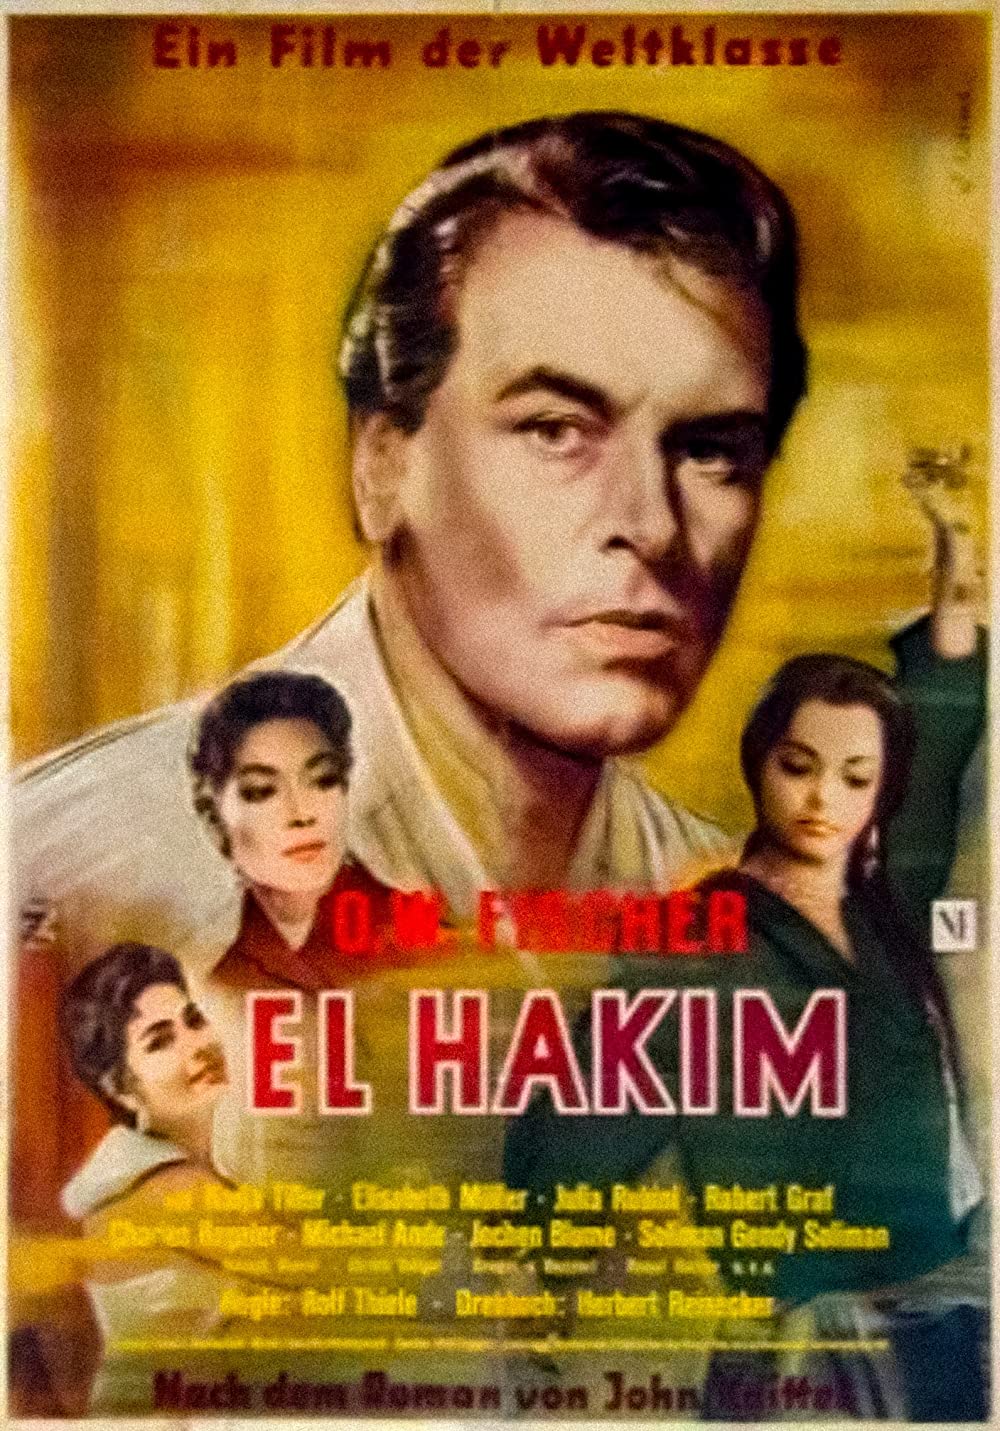 Filmbeschreibung zu El Hakim